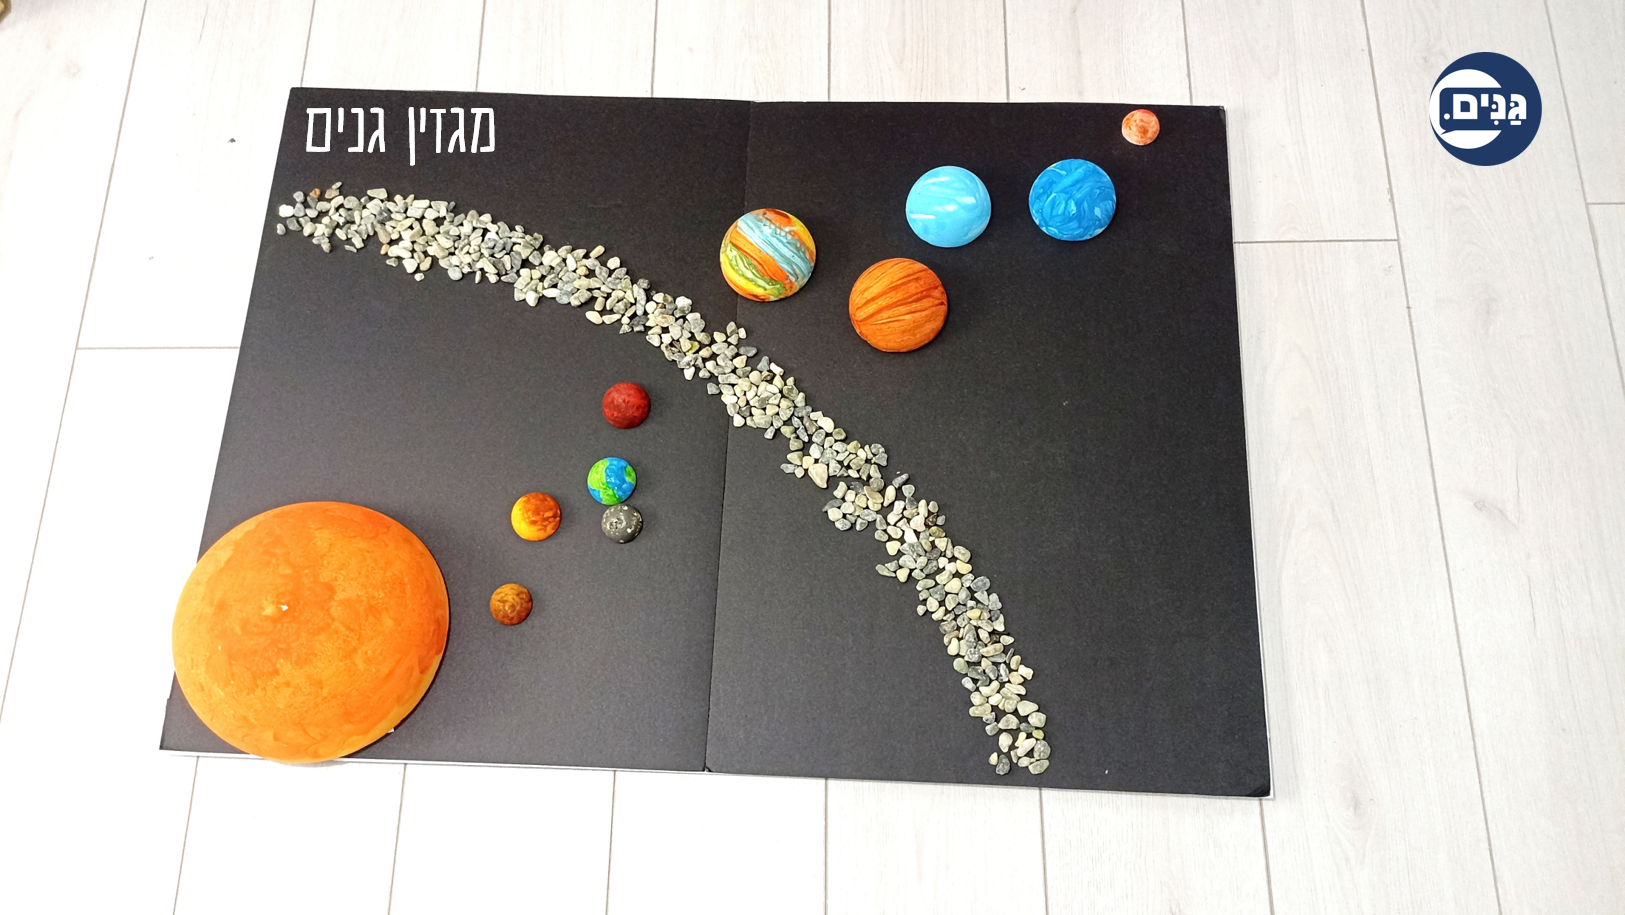 מודל של מערכת השמש הכולל את כוכבי הלכת וחגורת האסטרואידים במאצעות כדורי קלקר על משטח קאפה שחור